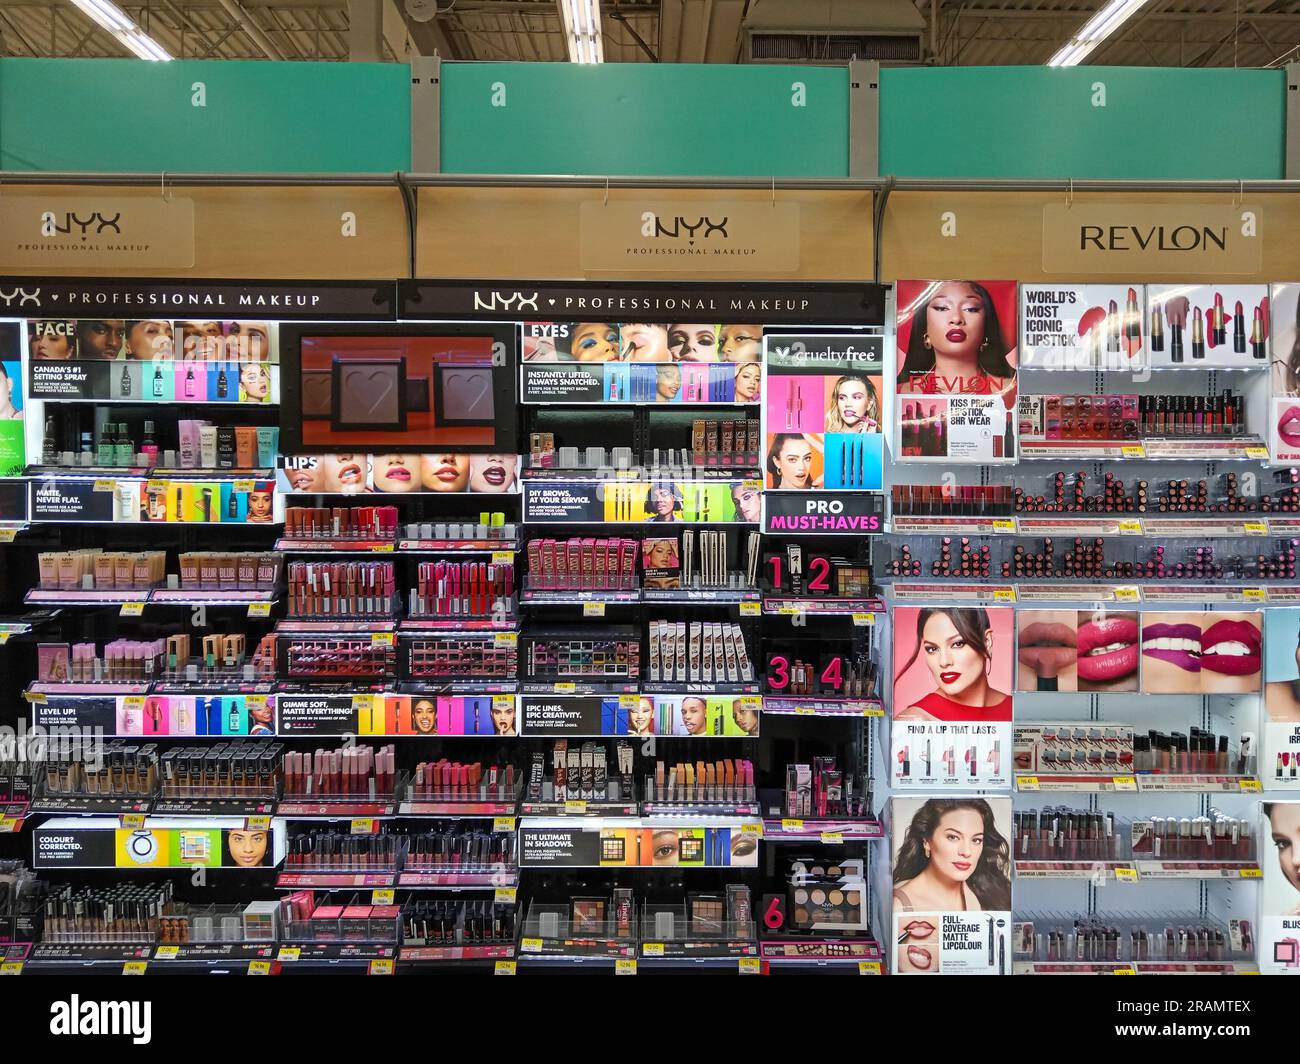 Penticton, British Columbia, Canada - June 7, 2023: Interior view of the cosmetics department in Walmart located in Penticton, British Columbia, Canad Stock Photo